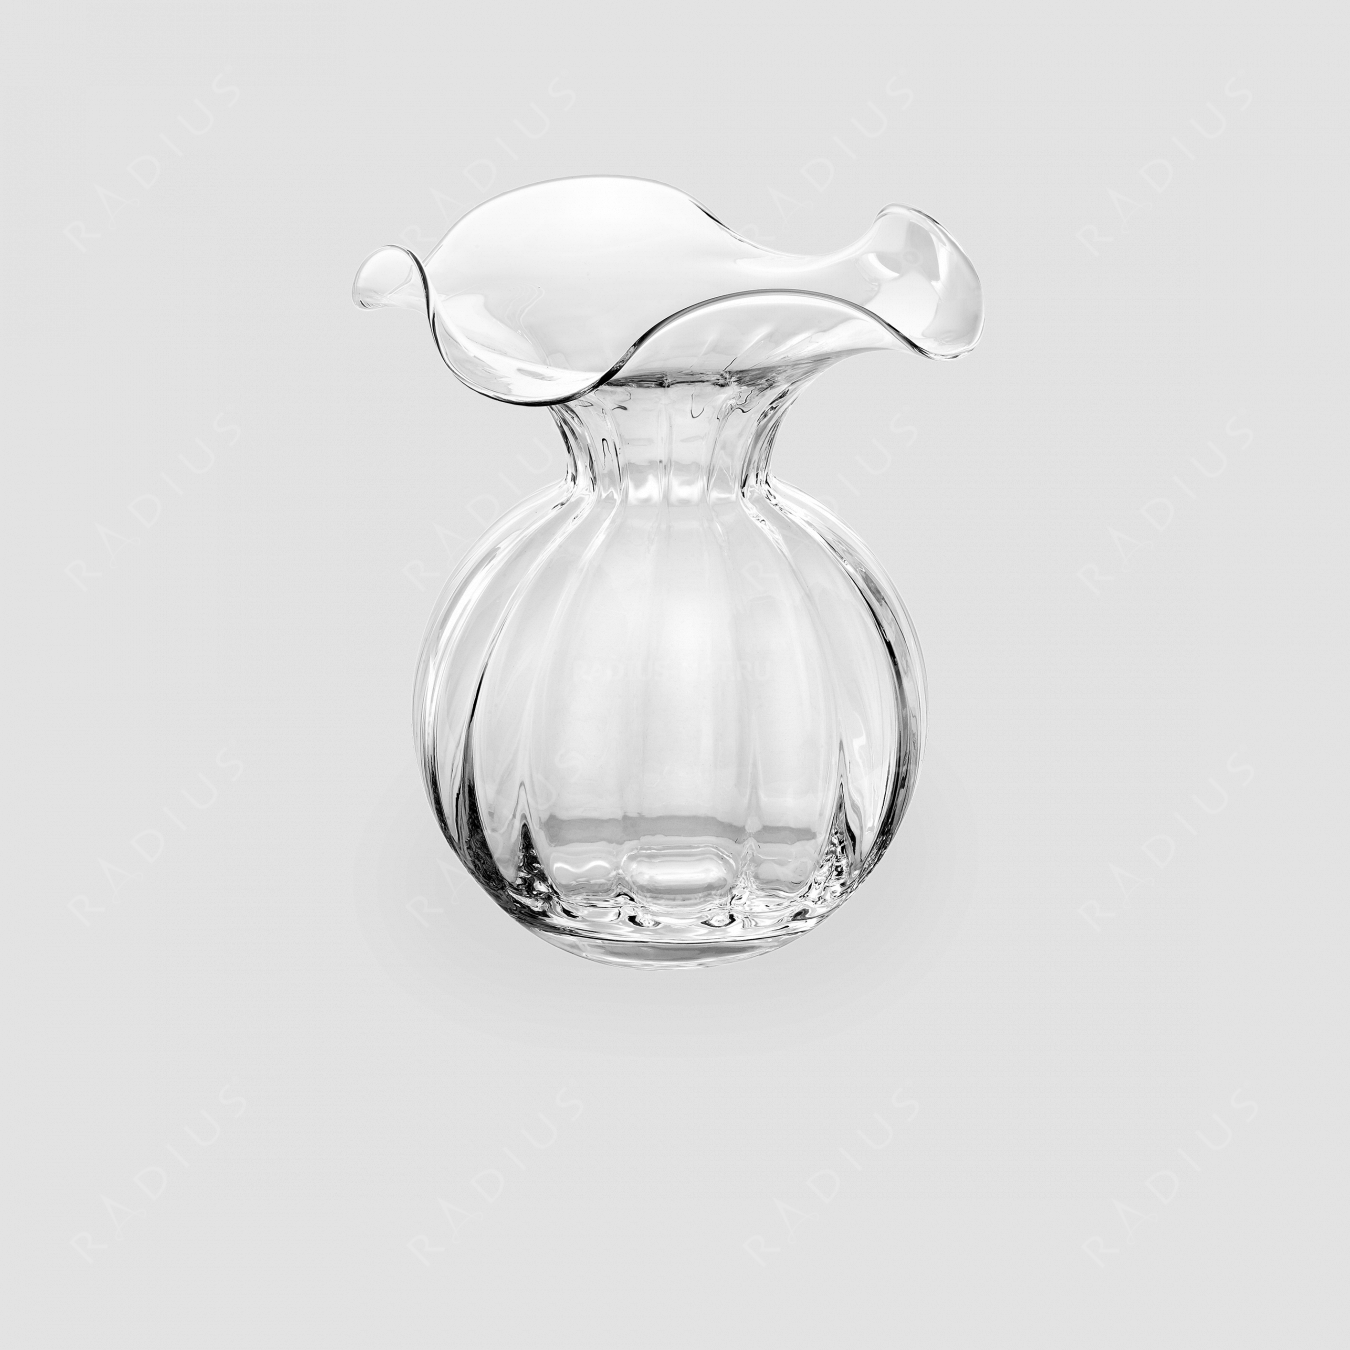 Стеклянная ваза для цветов, диаметр: 23 см, высота: 24 см, материал: стекло, цвет: прозрачный, серия Primula, IVV (Italy), Италия